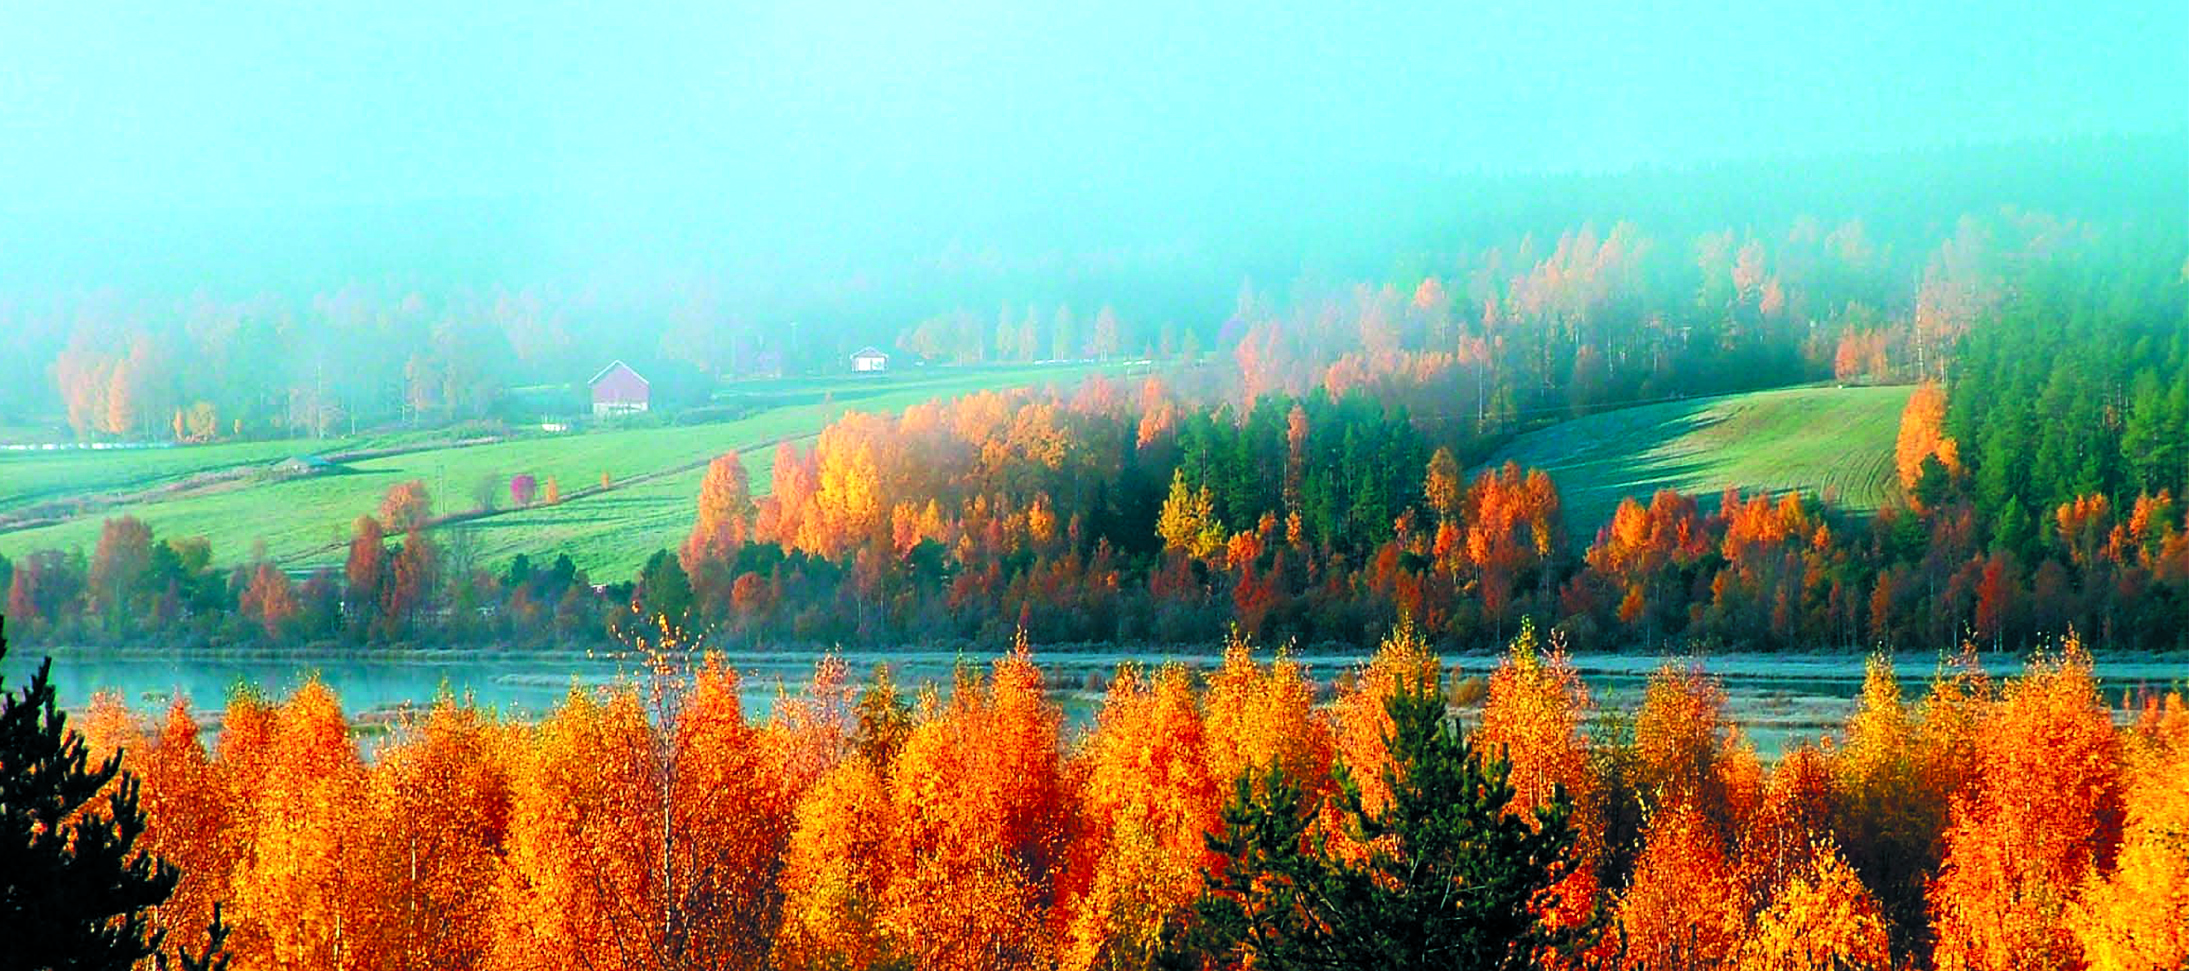 Treehotel-Sweden-Nature.jpg.jpg